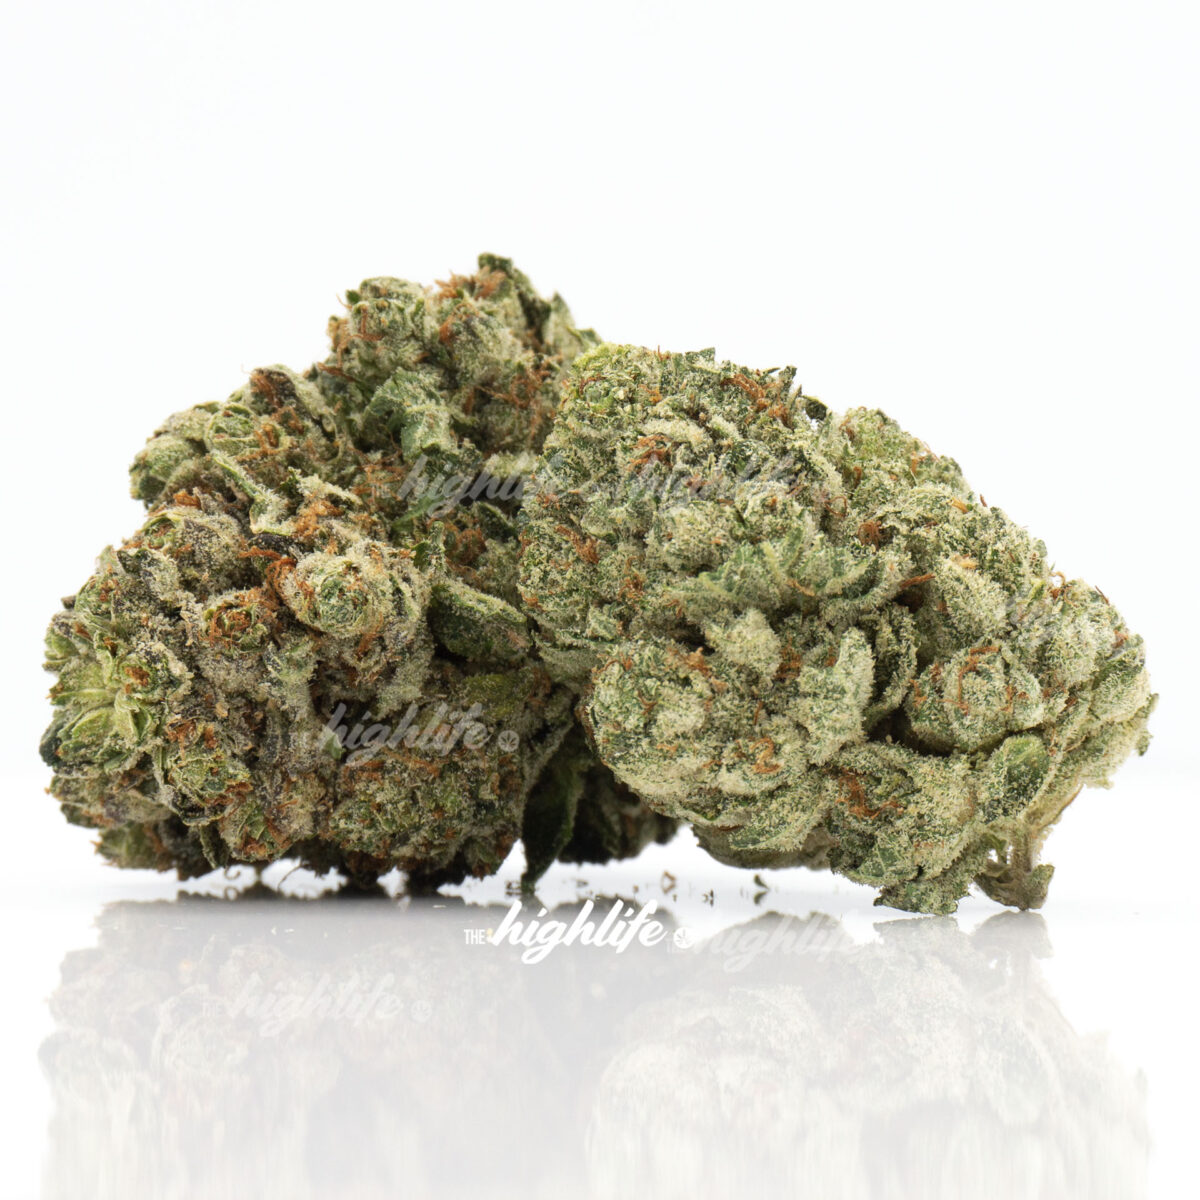 Buy purple runtz marijuana weed in ottawa